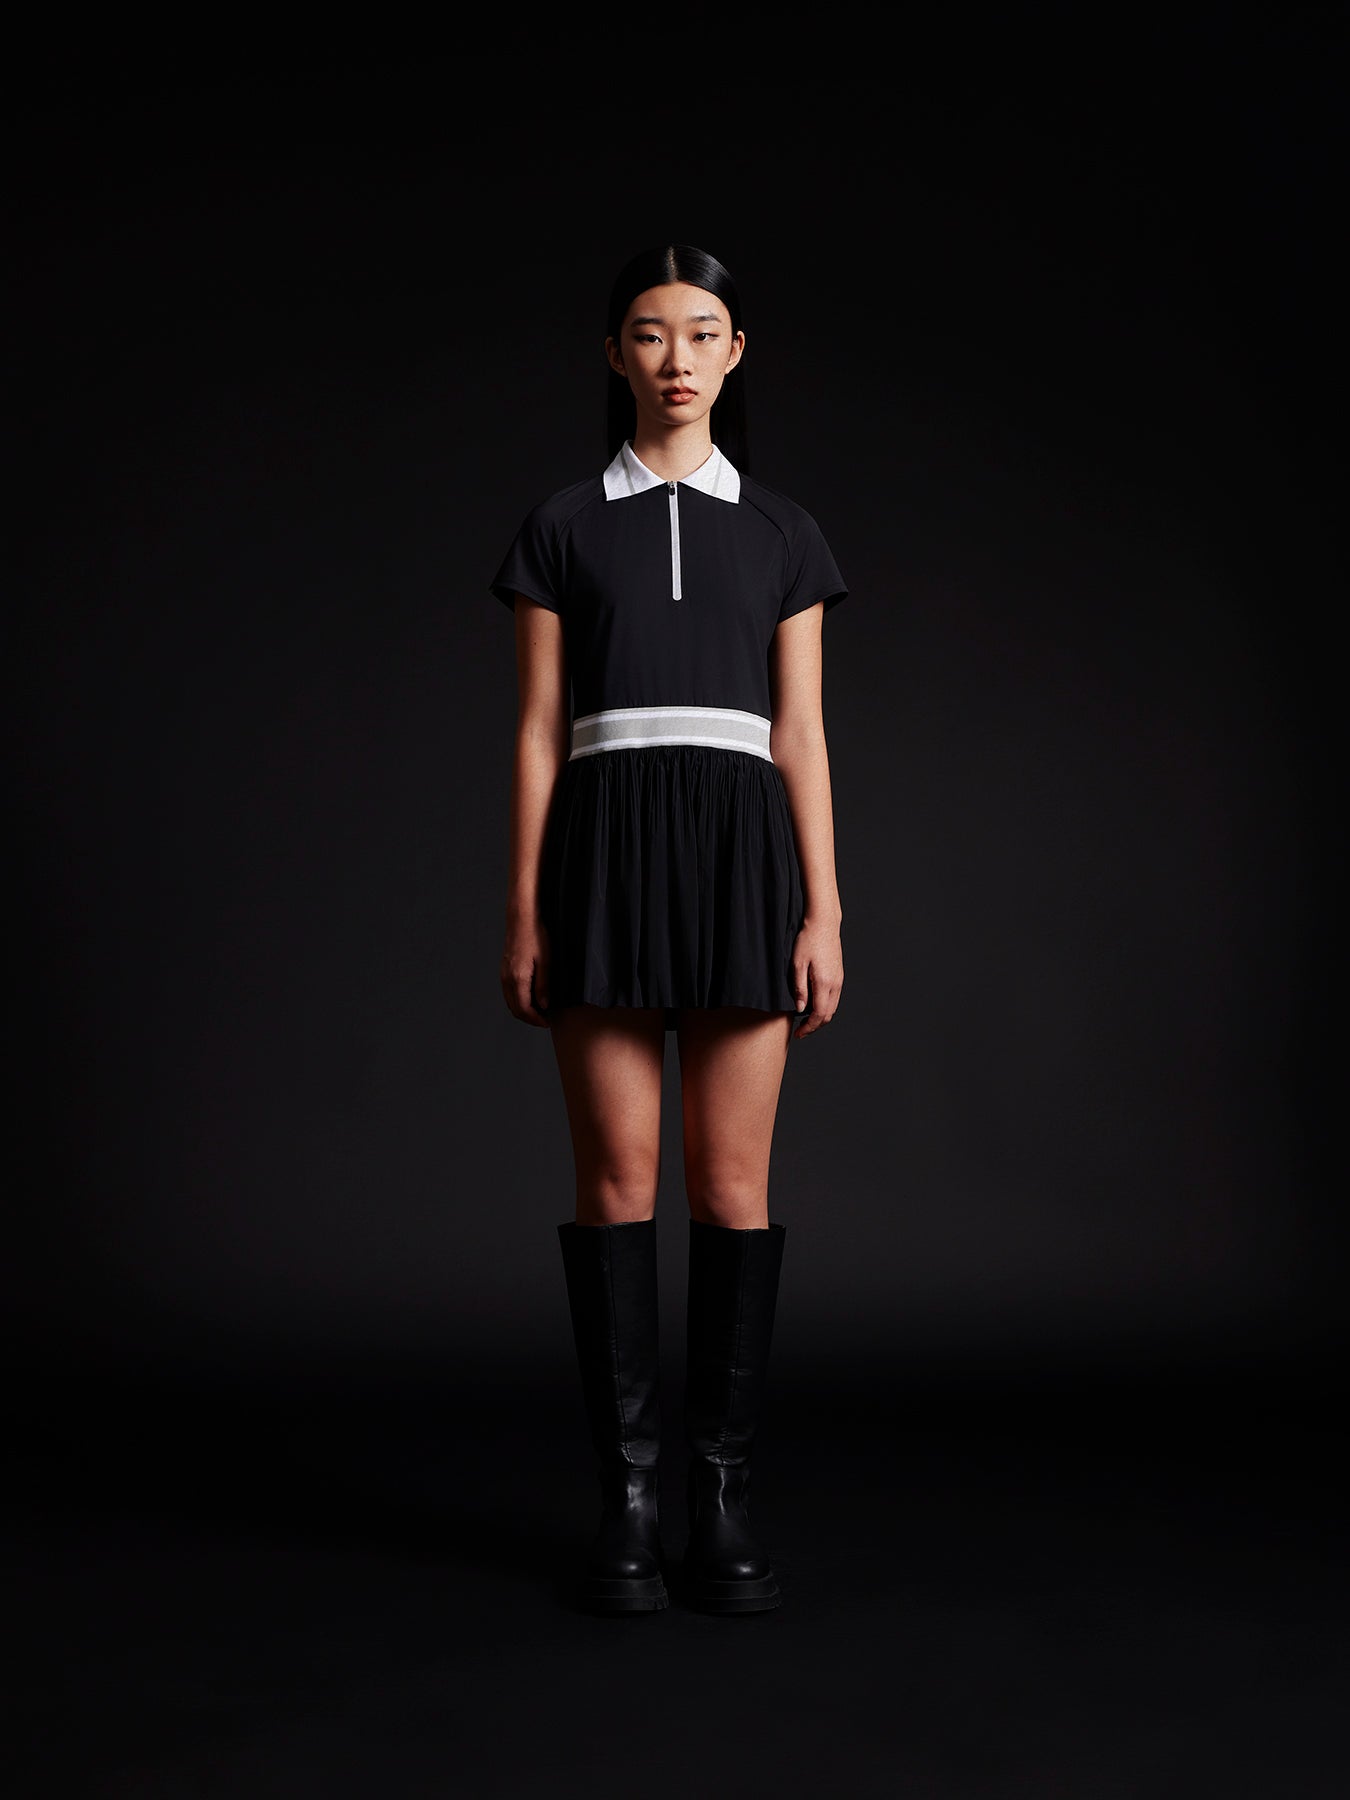 model wear black tennis dress